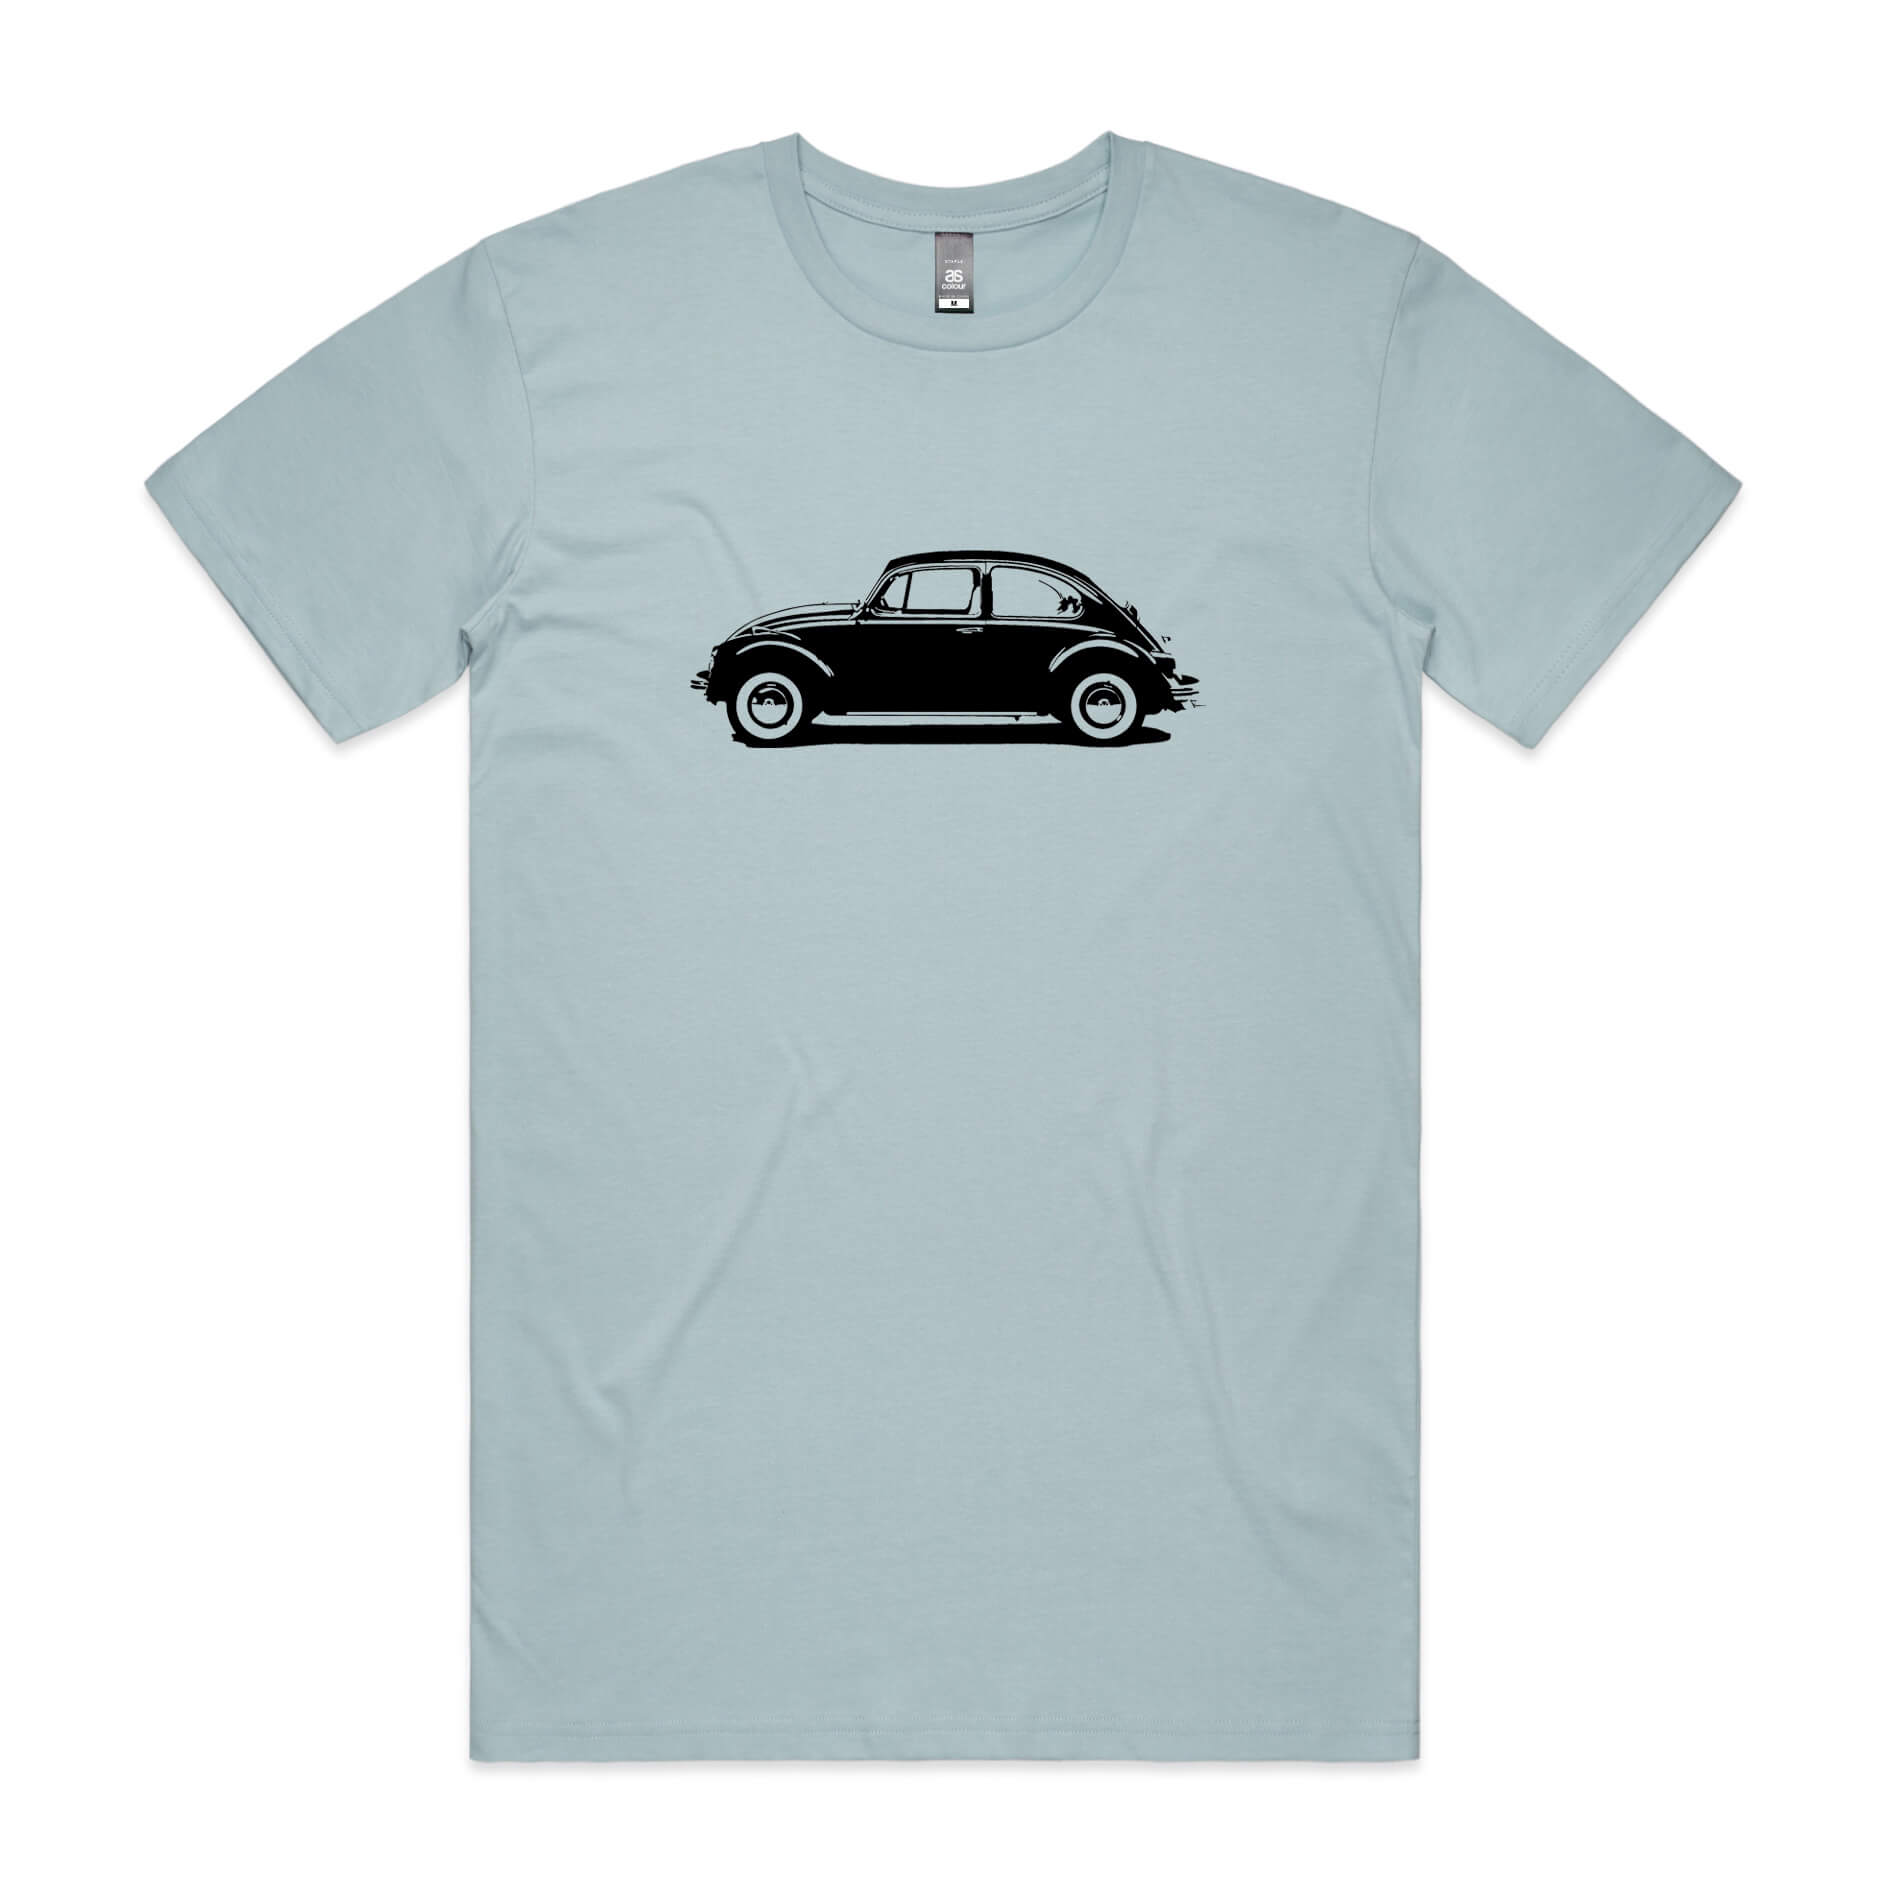 VW Beetle t-shirt in light blue